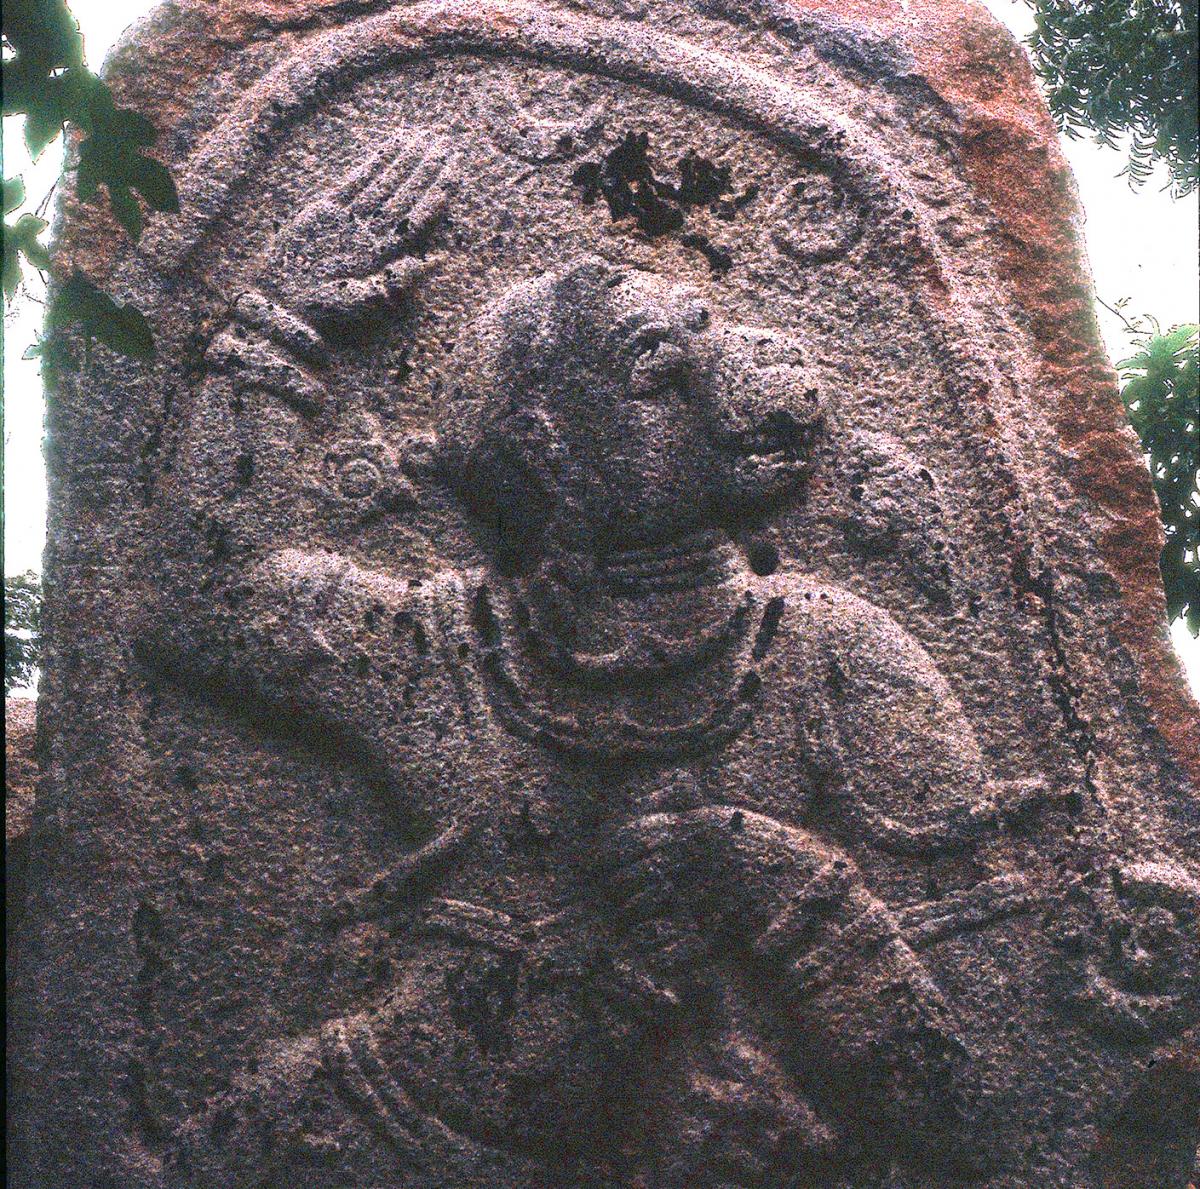 VMS 442 Engraved slab with image of the god Hanuman